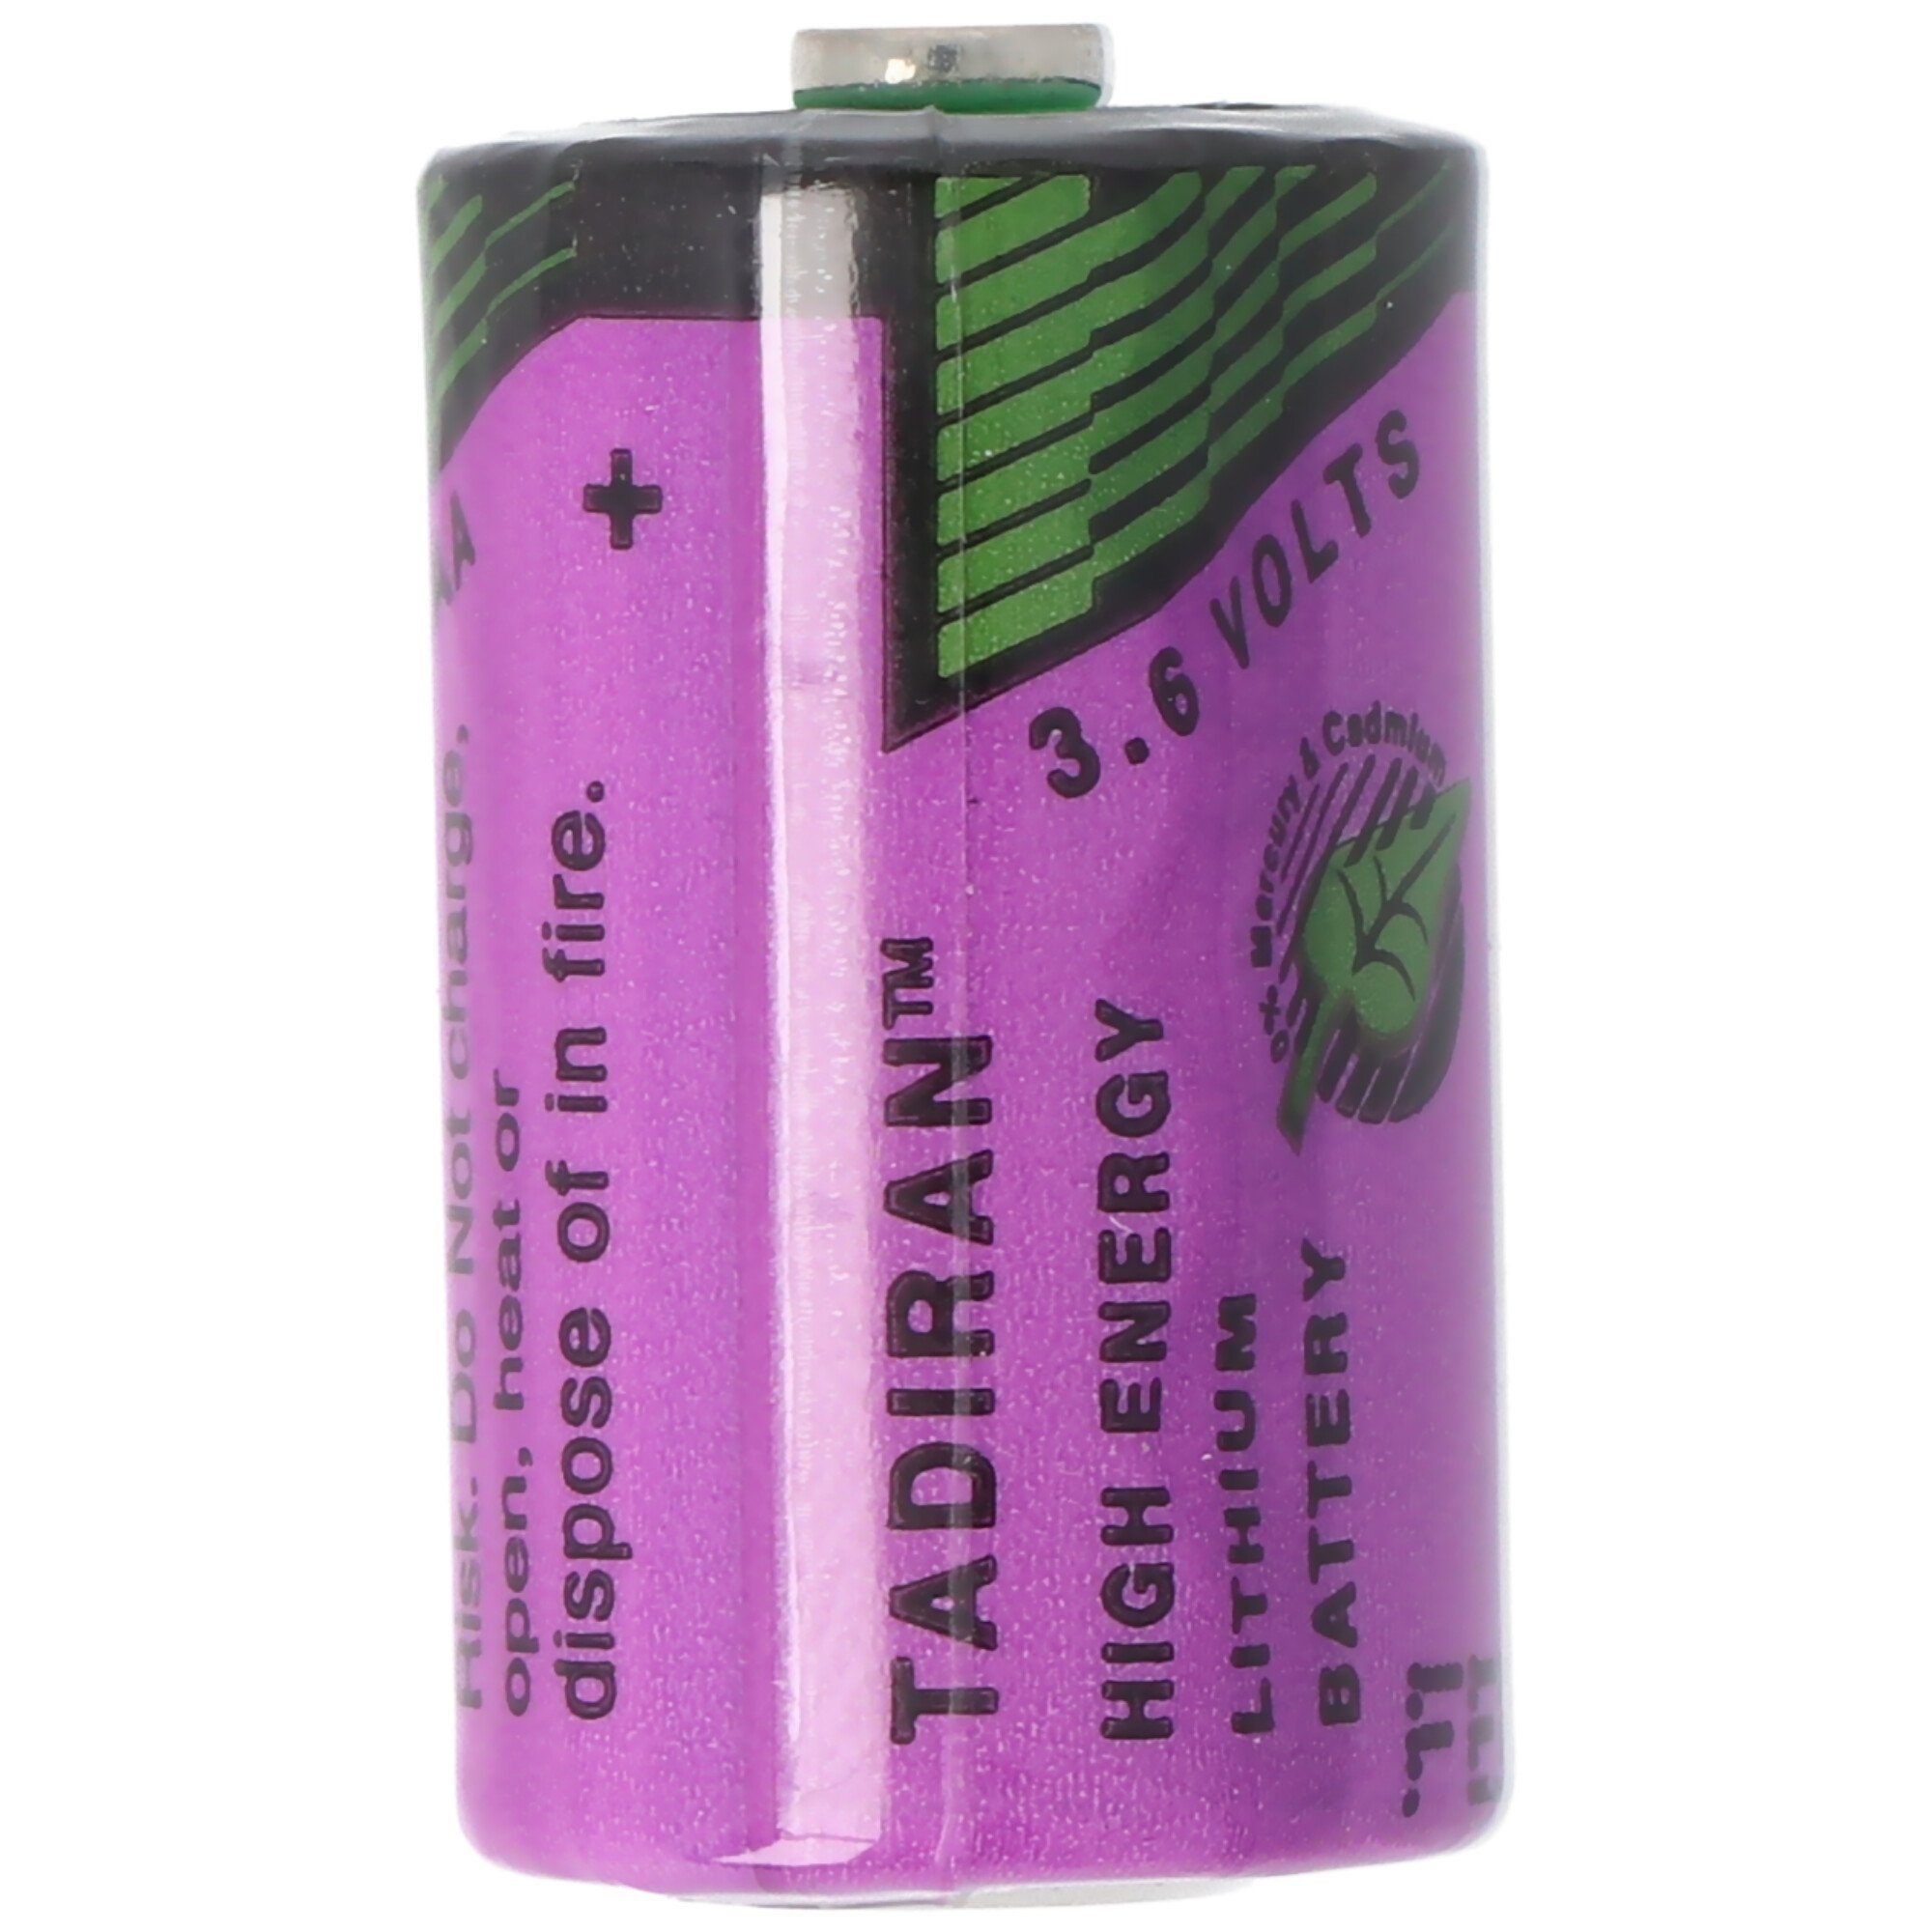 Tadiran Sonnenschein Inorganic Lithium Battery SL-350/S V) Standard (3,6 ohne Batterie, LF